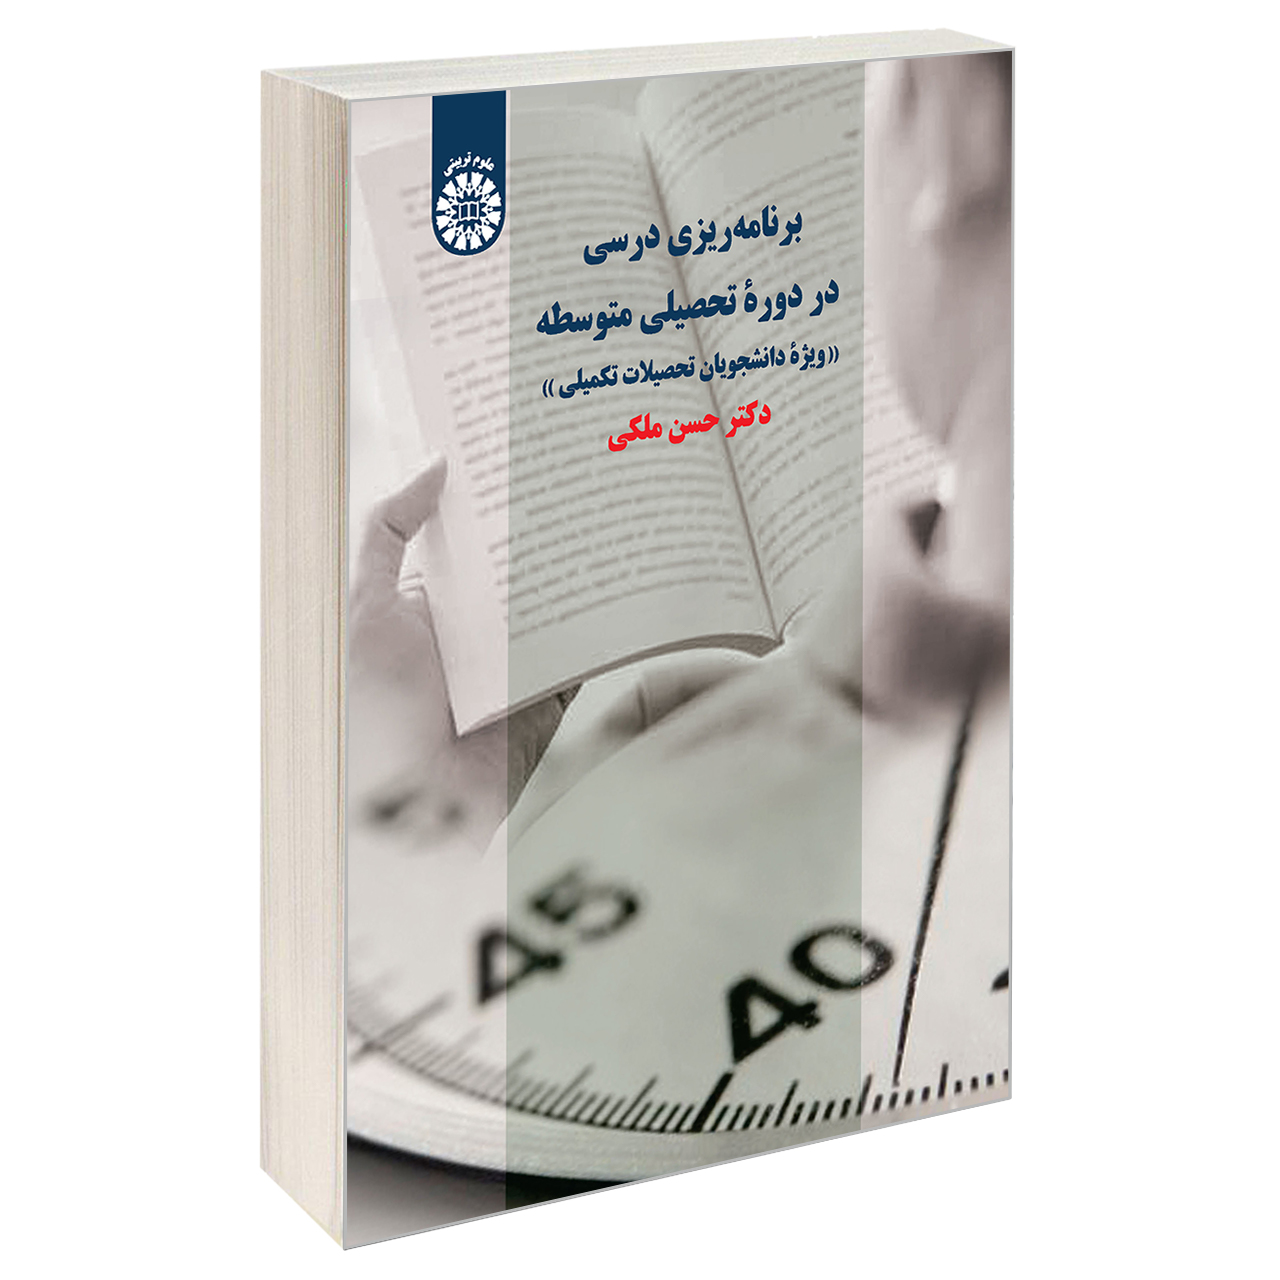 کتاب برنامه ريزی درسی در دوره تحصيلی متوسطه اثر دکتر حسن ملکی نشر سمت